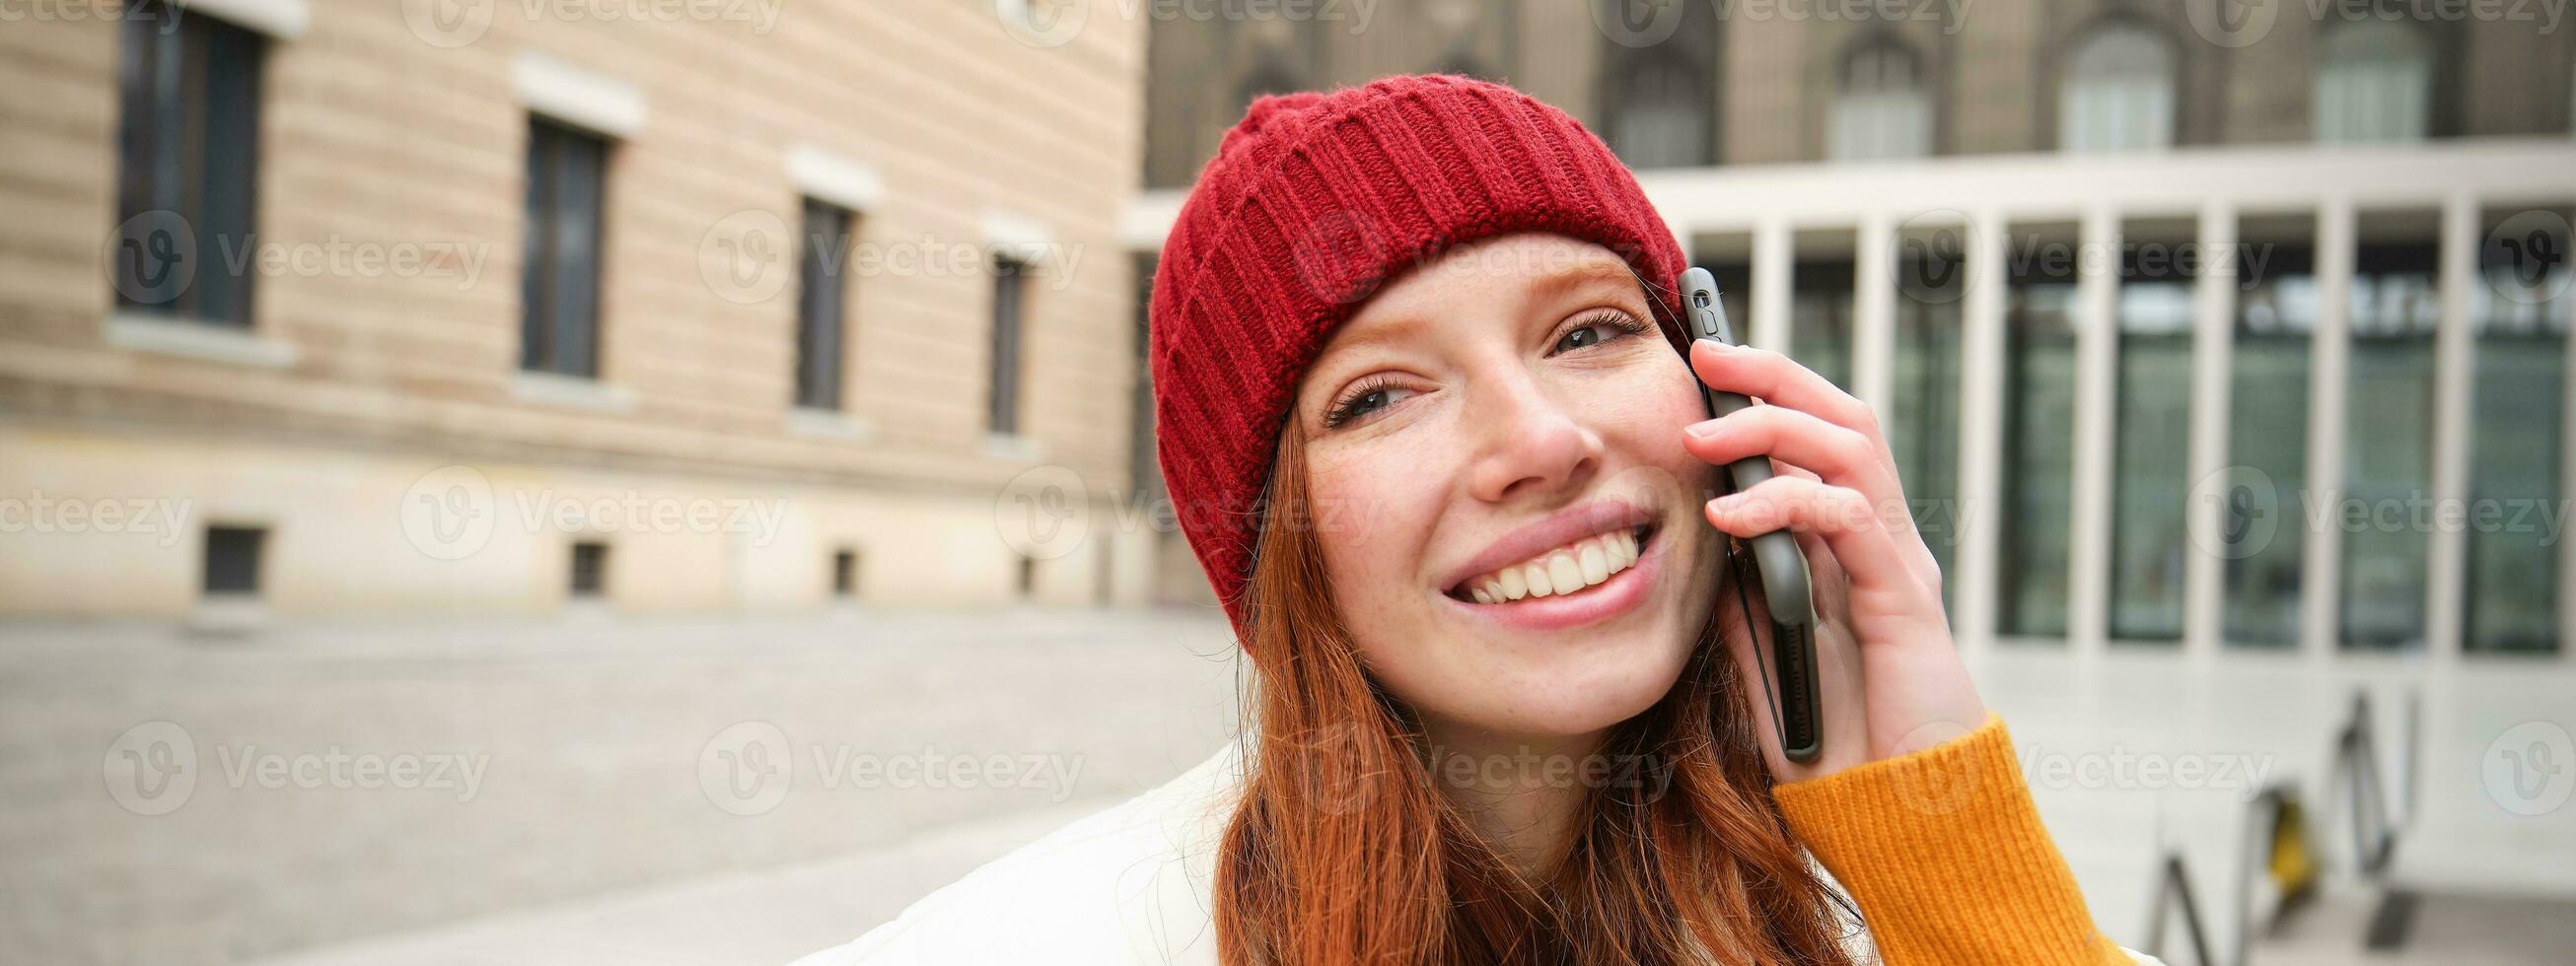 mobile lien et gens concept. content roux femme dans chapeau, pourparlers sur mobile téléphone, fabrication Téléphone appel, en utilisant app à appel à l'étranger photo